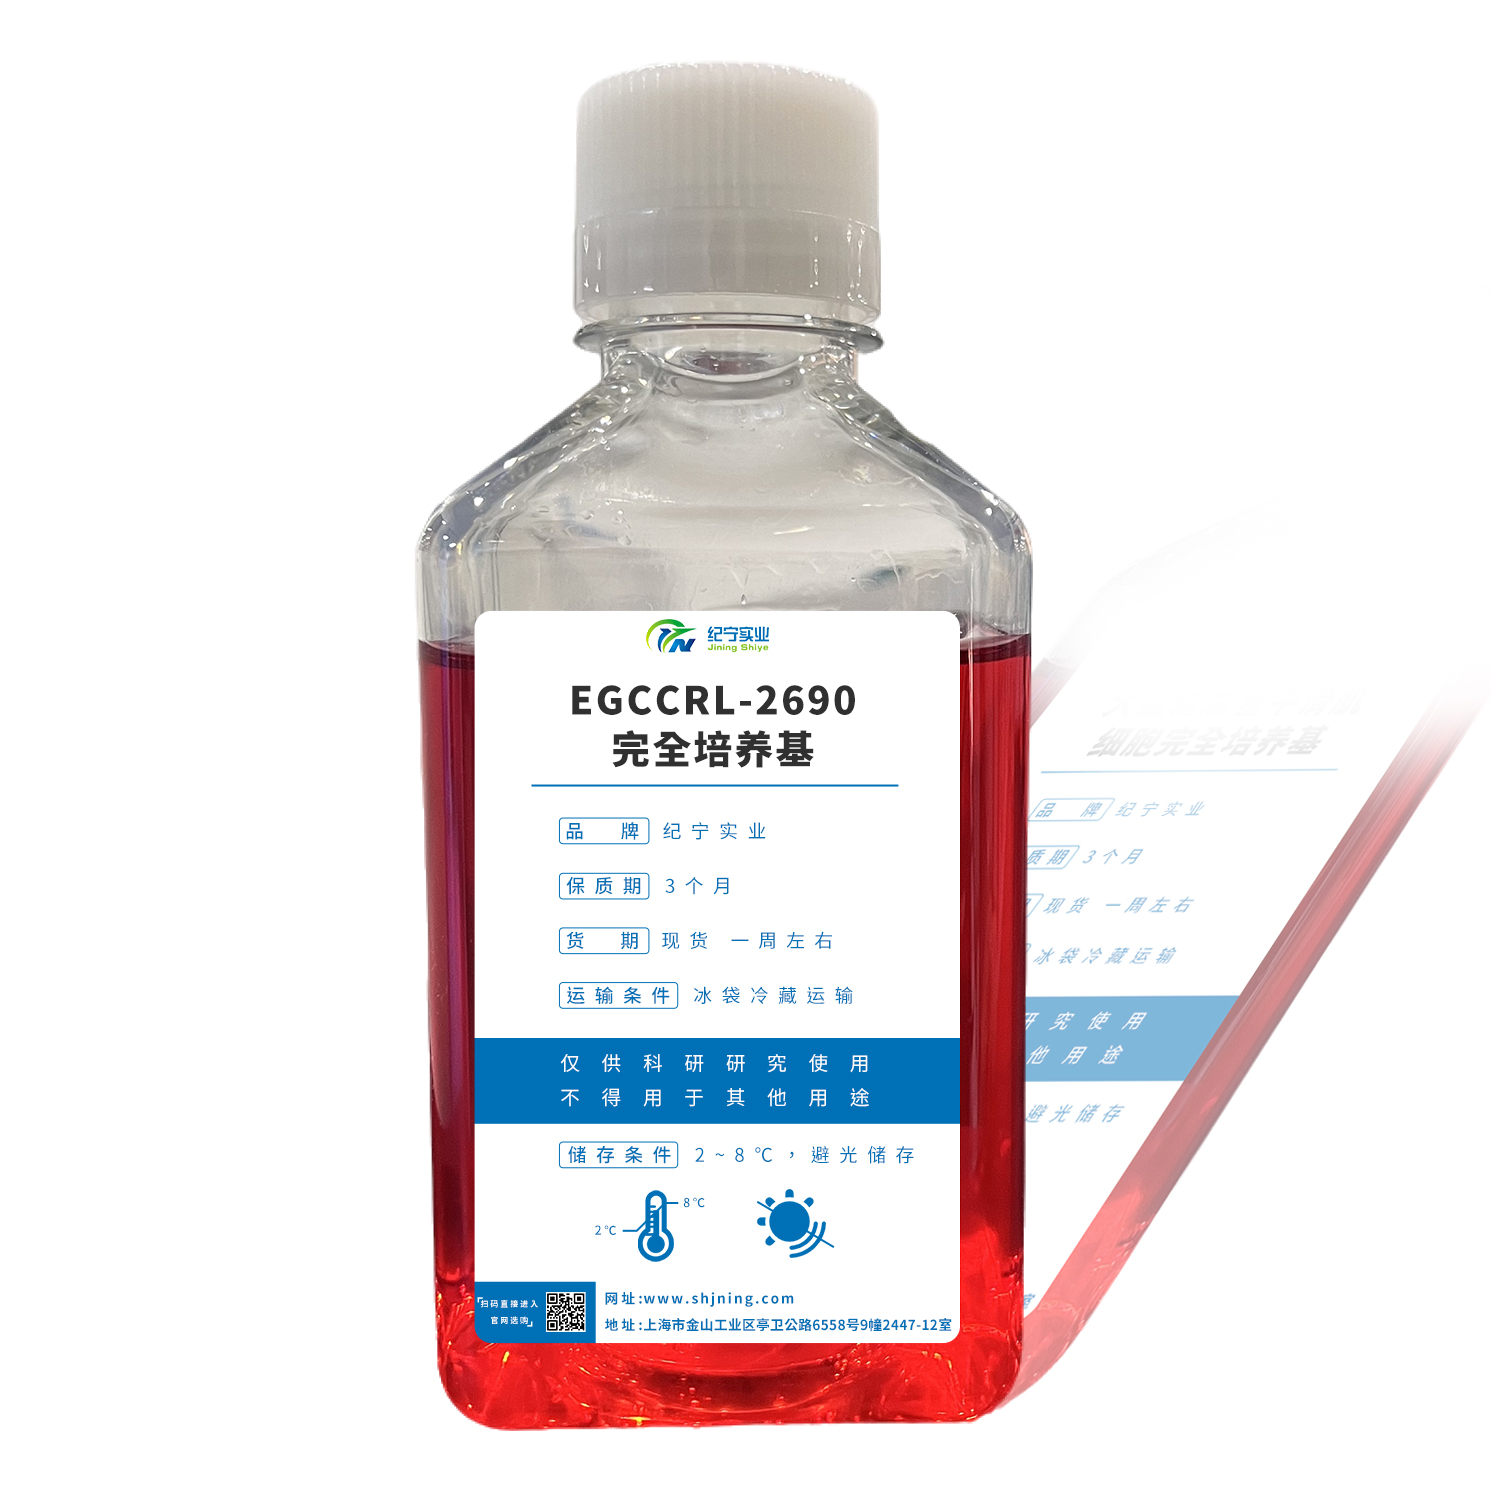 EGCCRL-2690完全培养基